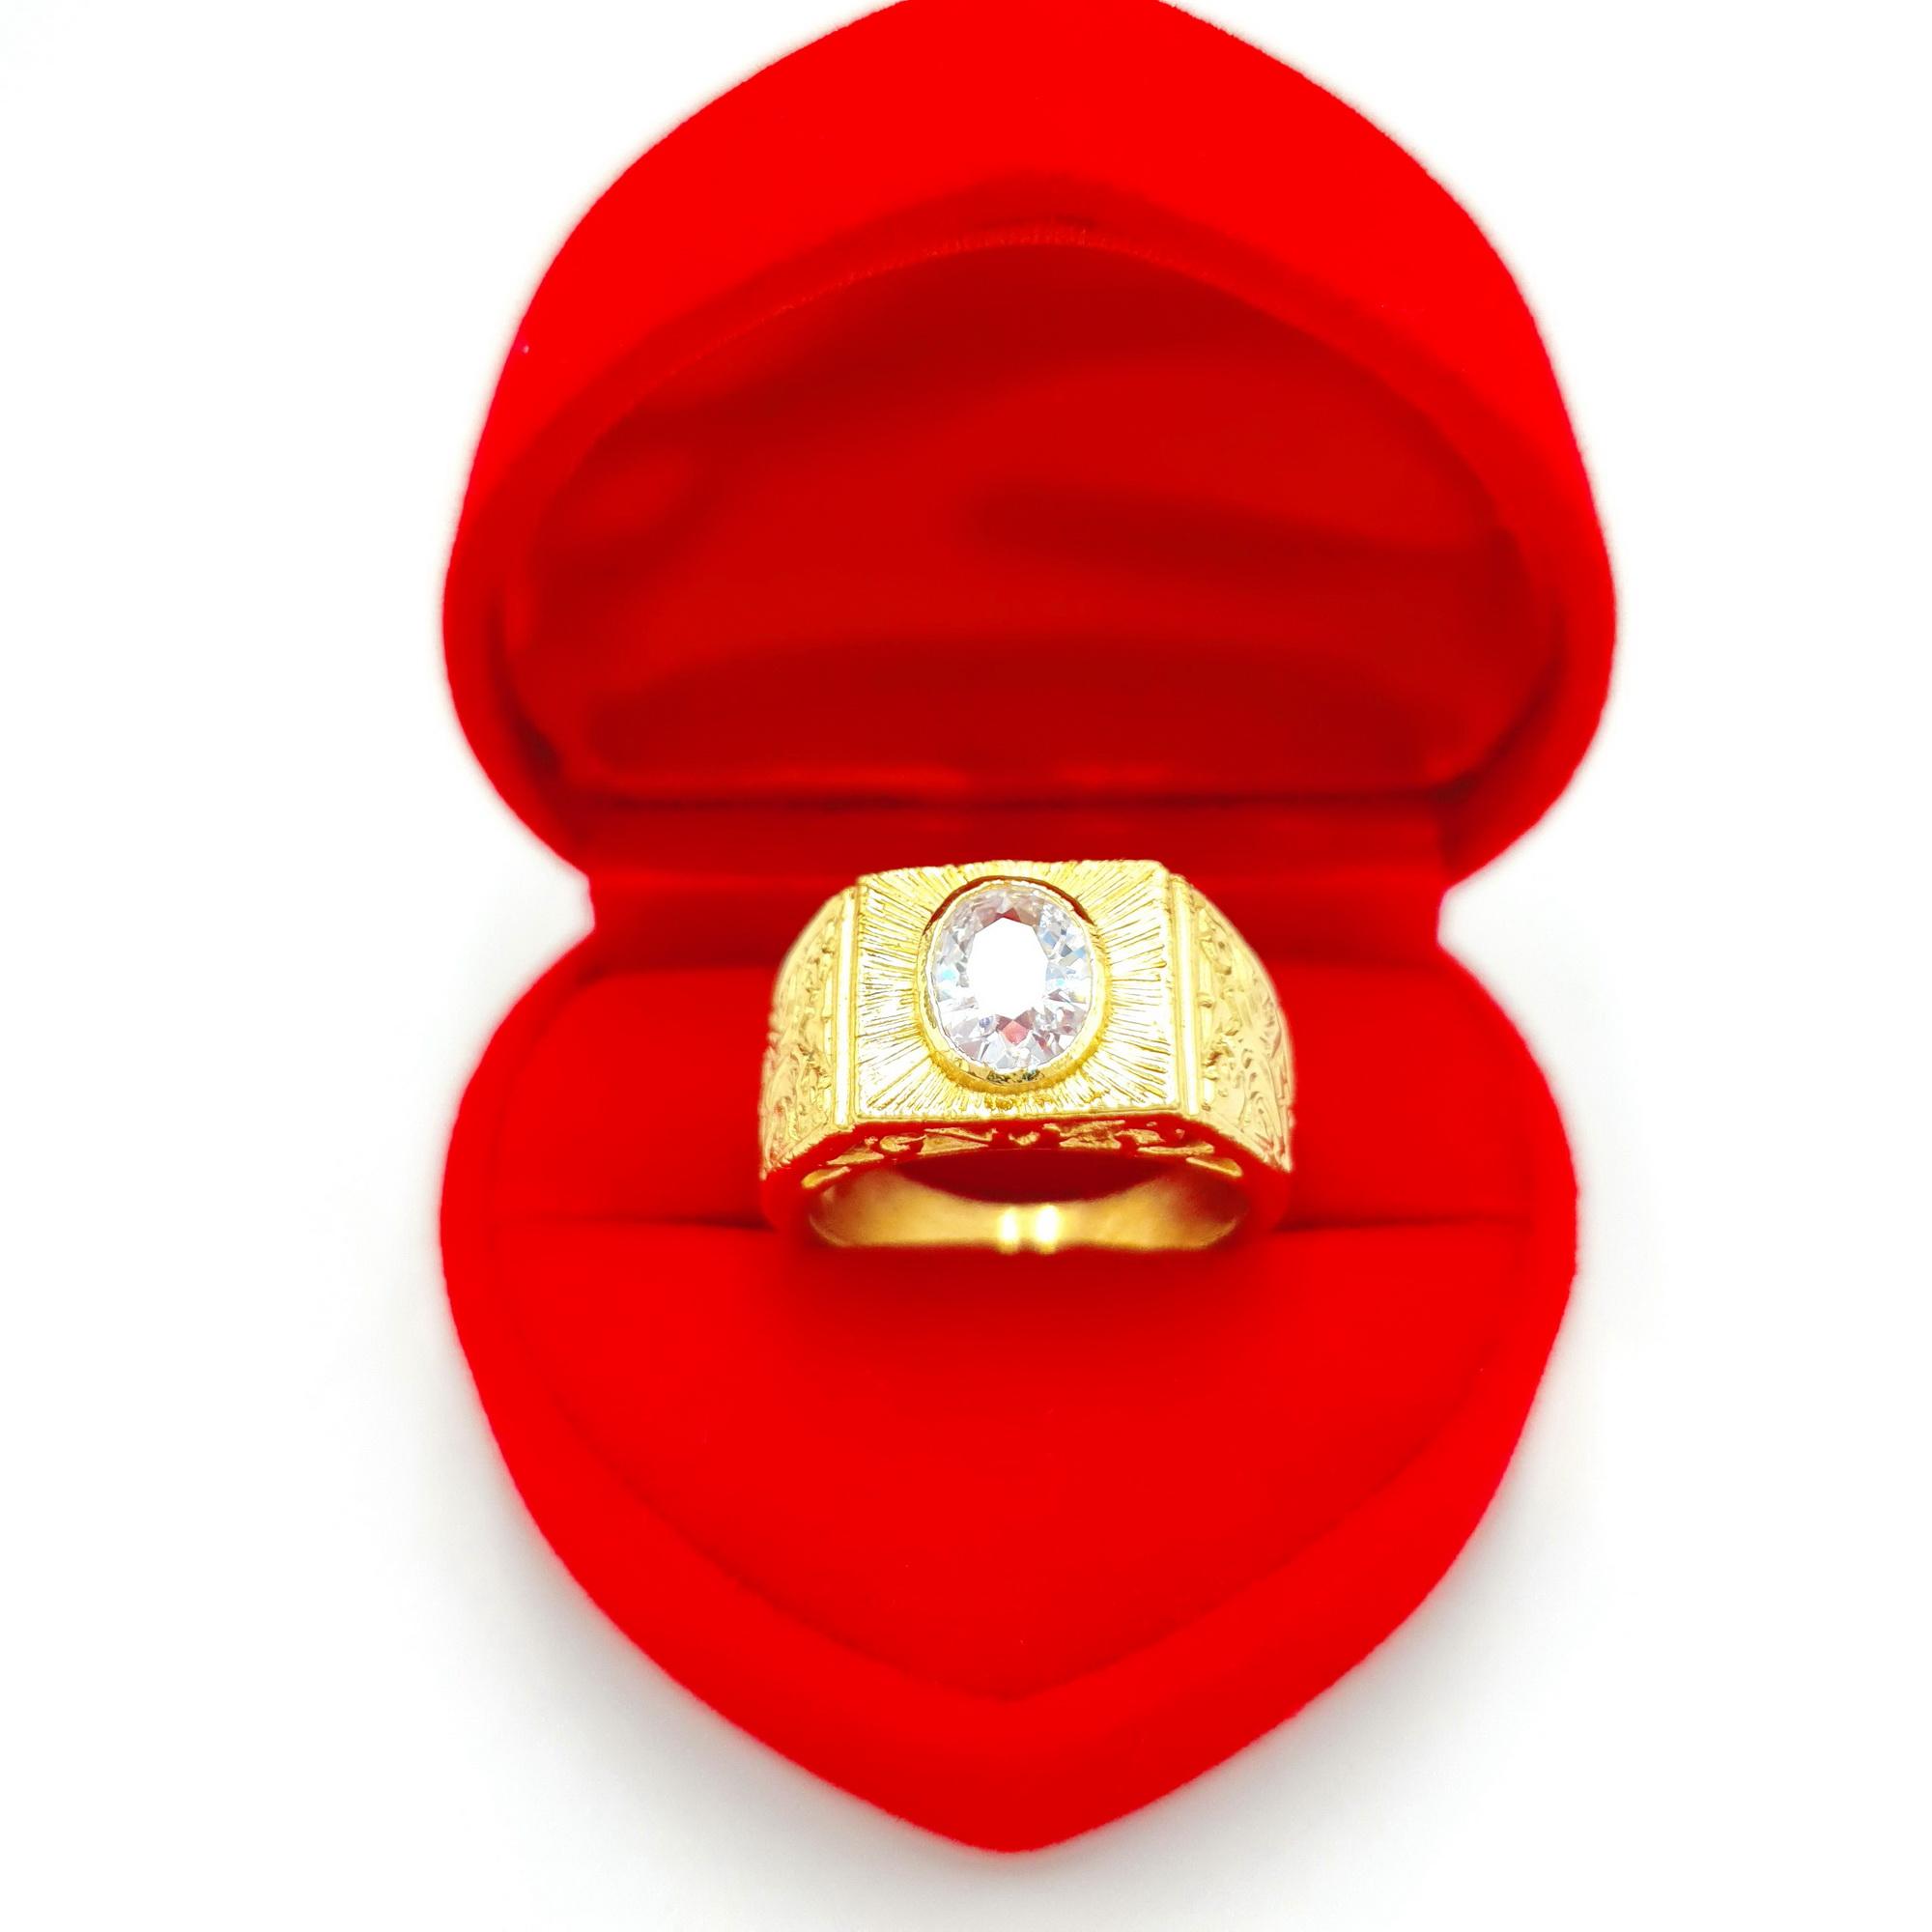 เเหวนทอง ประดับเพชรCZ 18K ขนาดเพชร 8x6MM เเหวนทองชุบไมครอน เเหวนหมั้น เเหวนเเต่งงาน สินค้าขายดีพร้อมส่ง